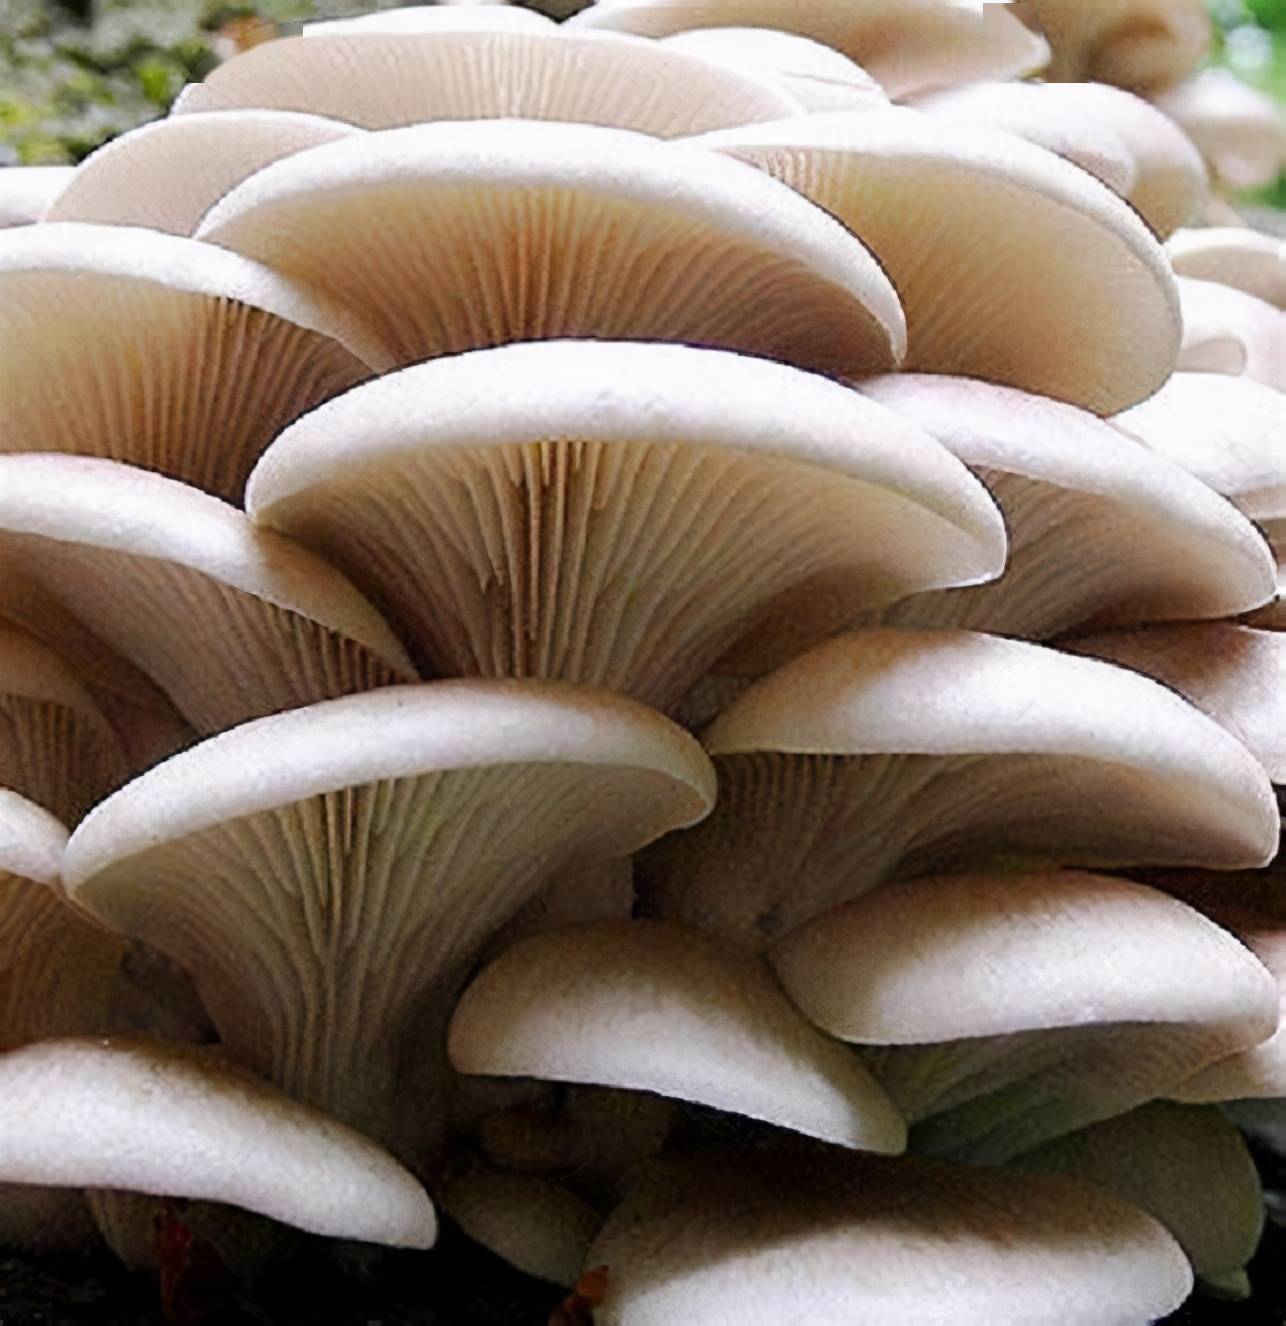 常见的食用蘑菇 常吃图片